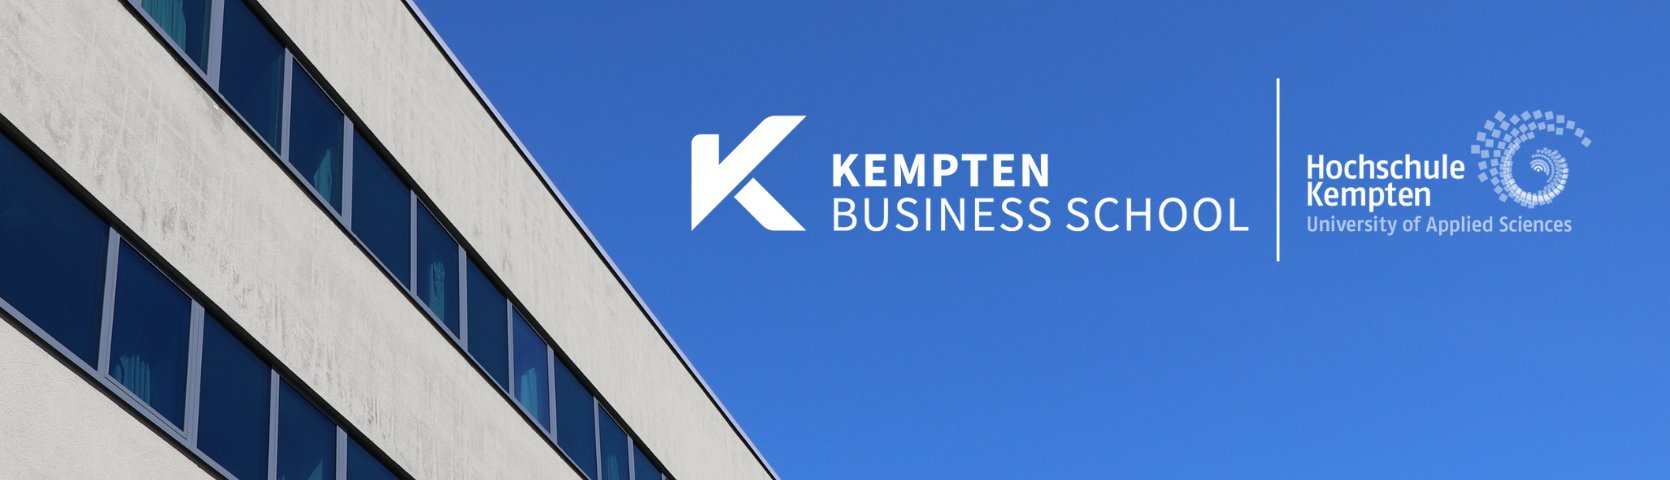 Kempten Business School - Hochschule Kempten